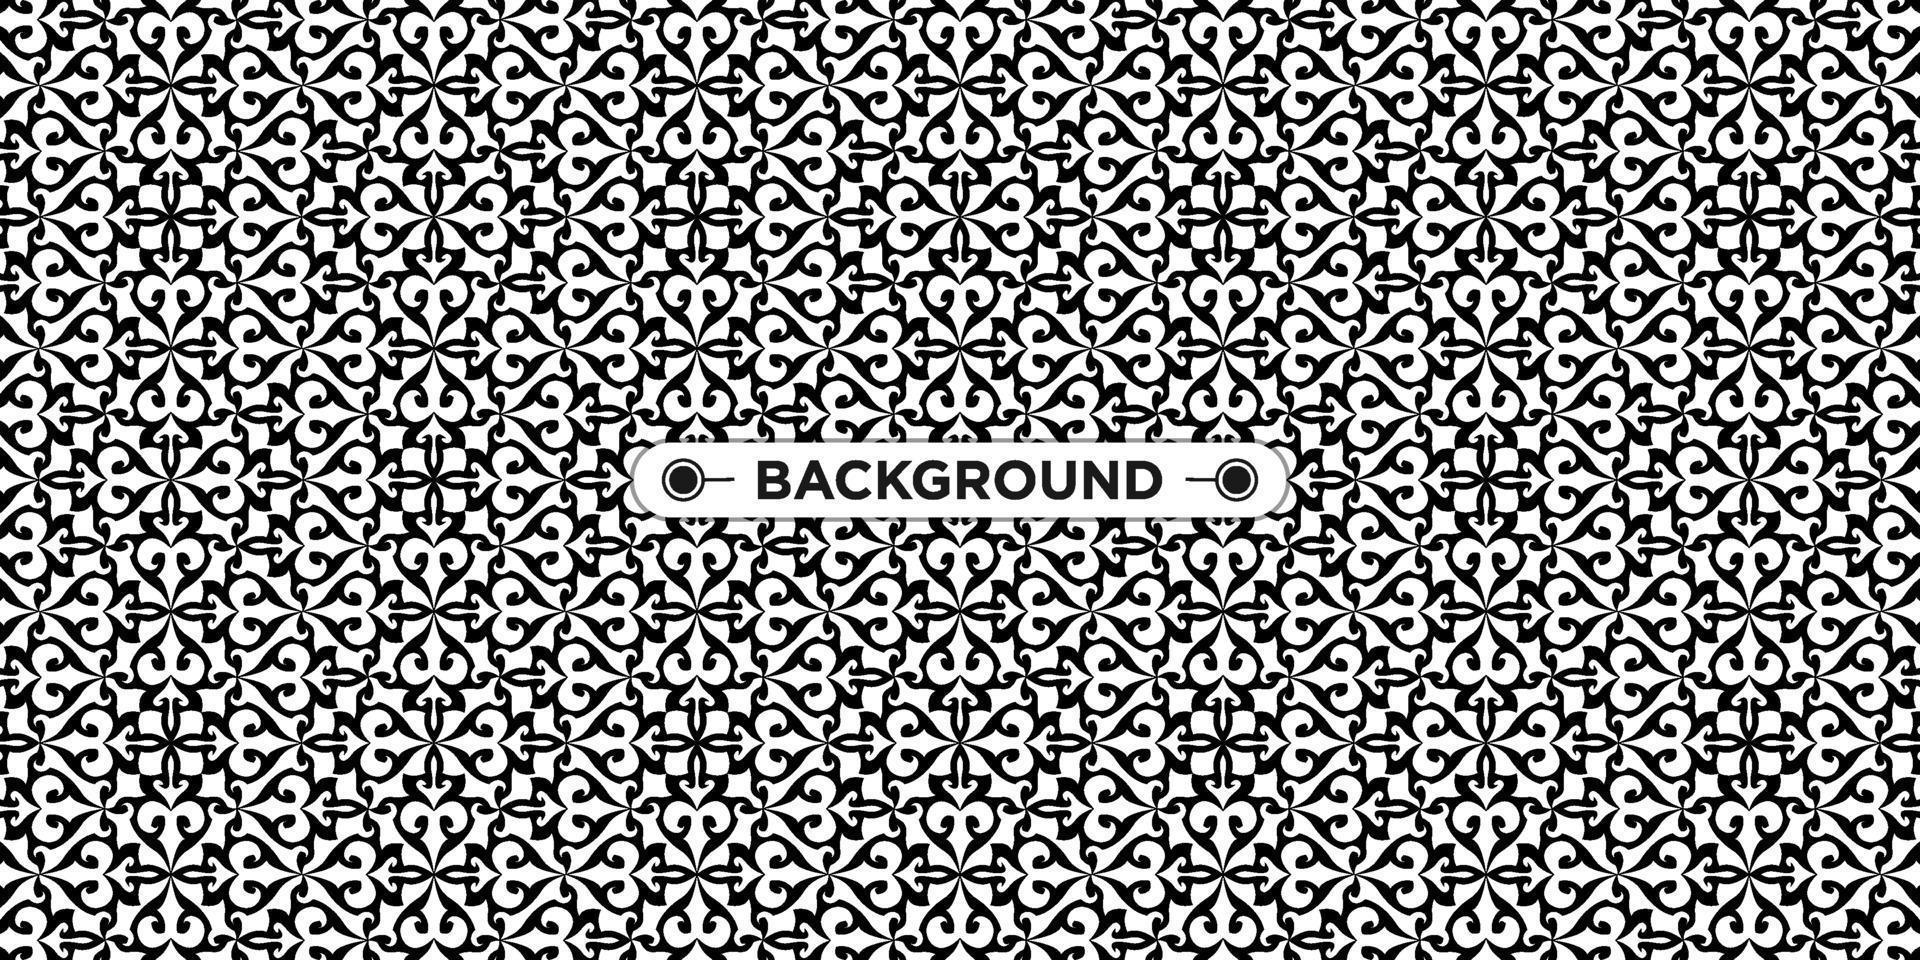 zwart-witte achtergrond met etnische textuur vector